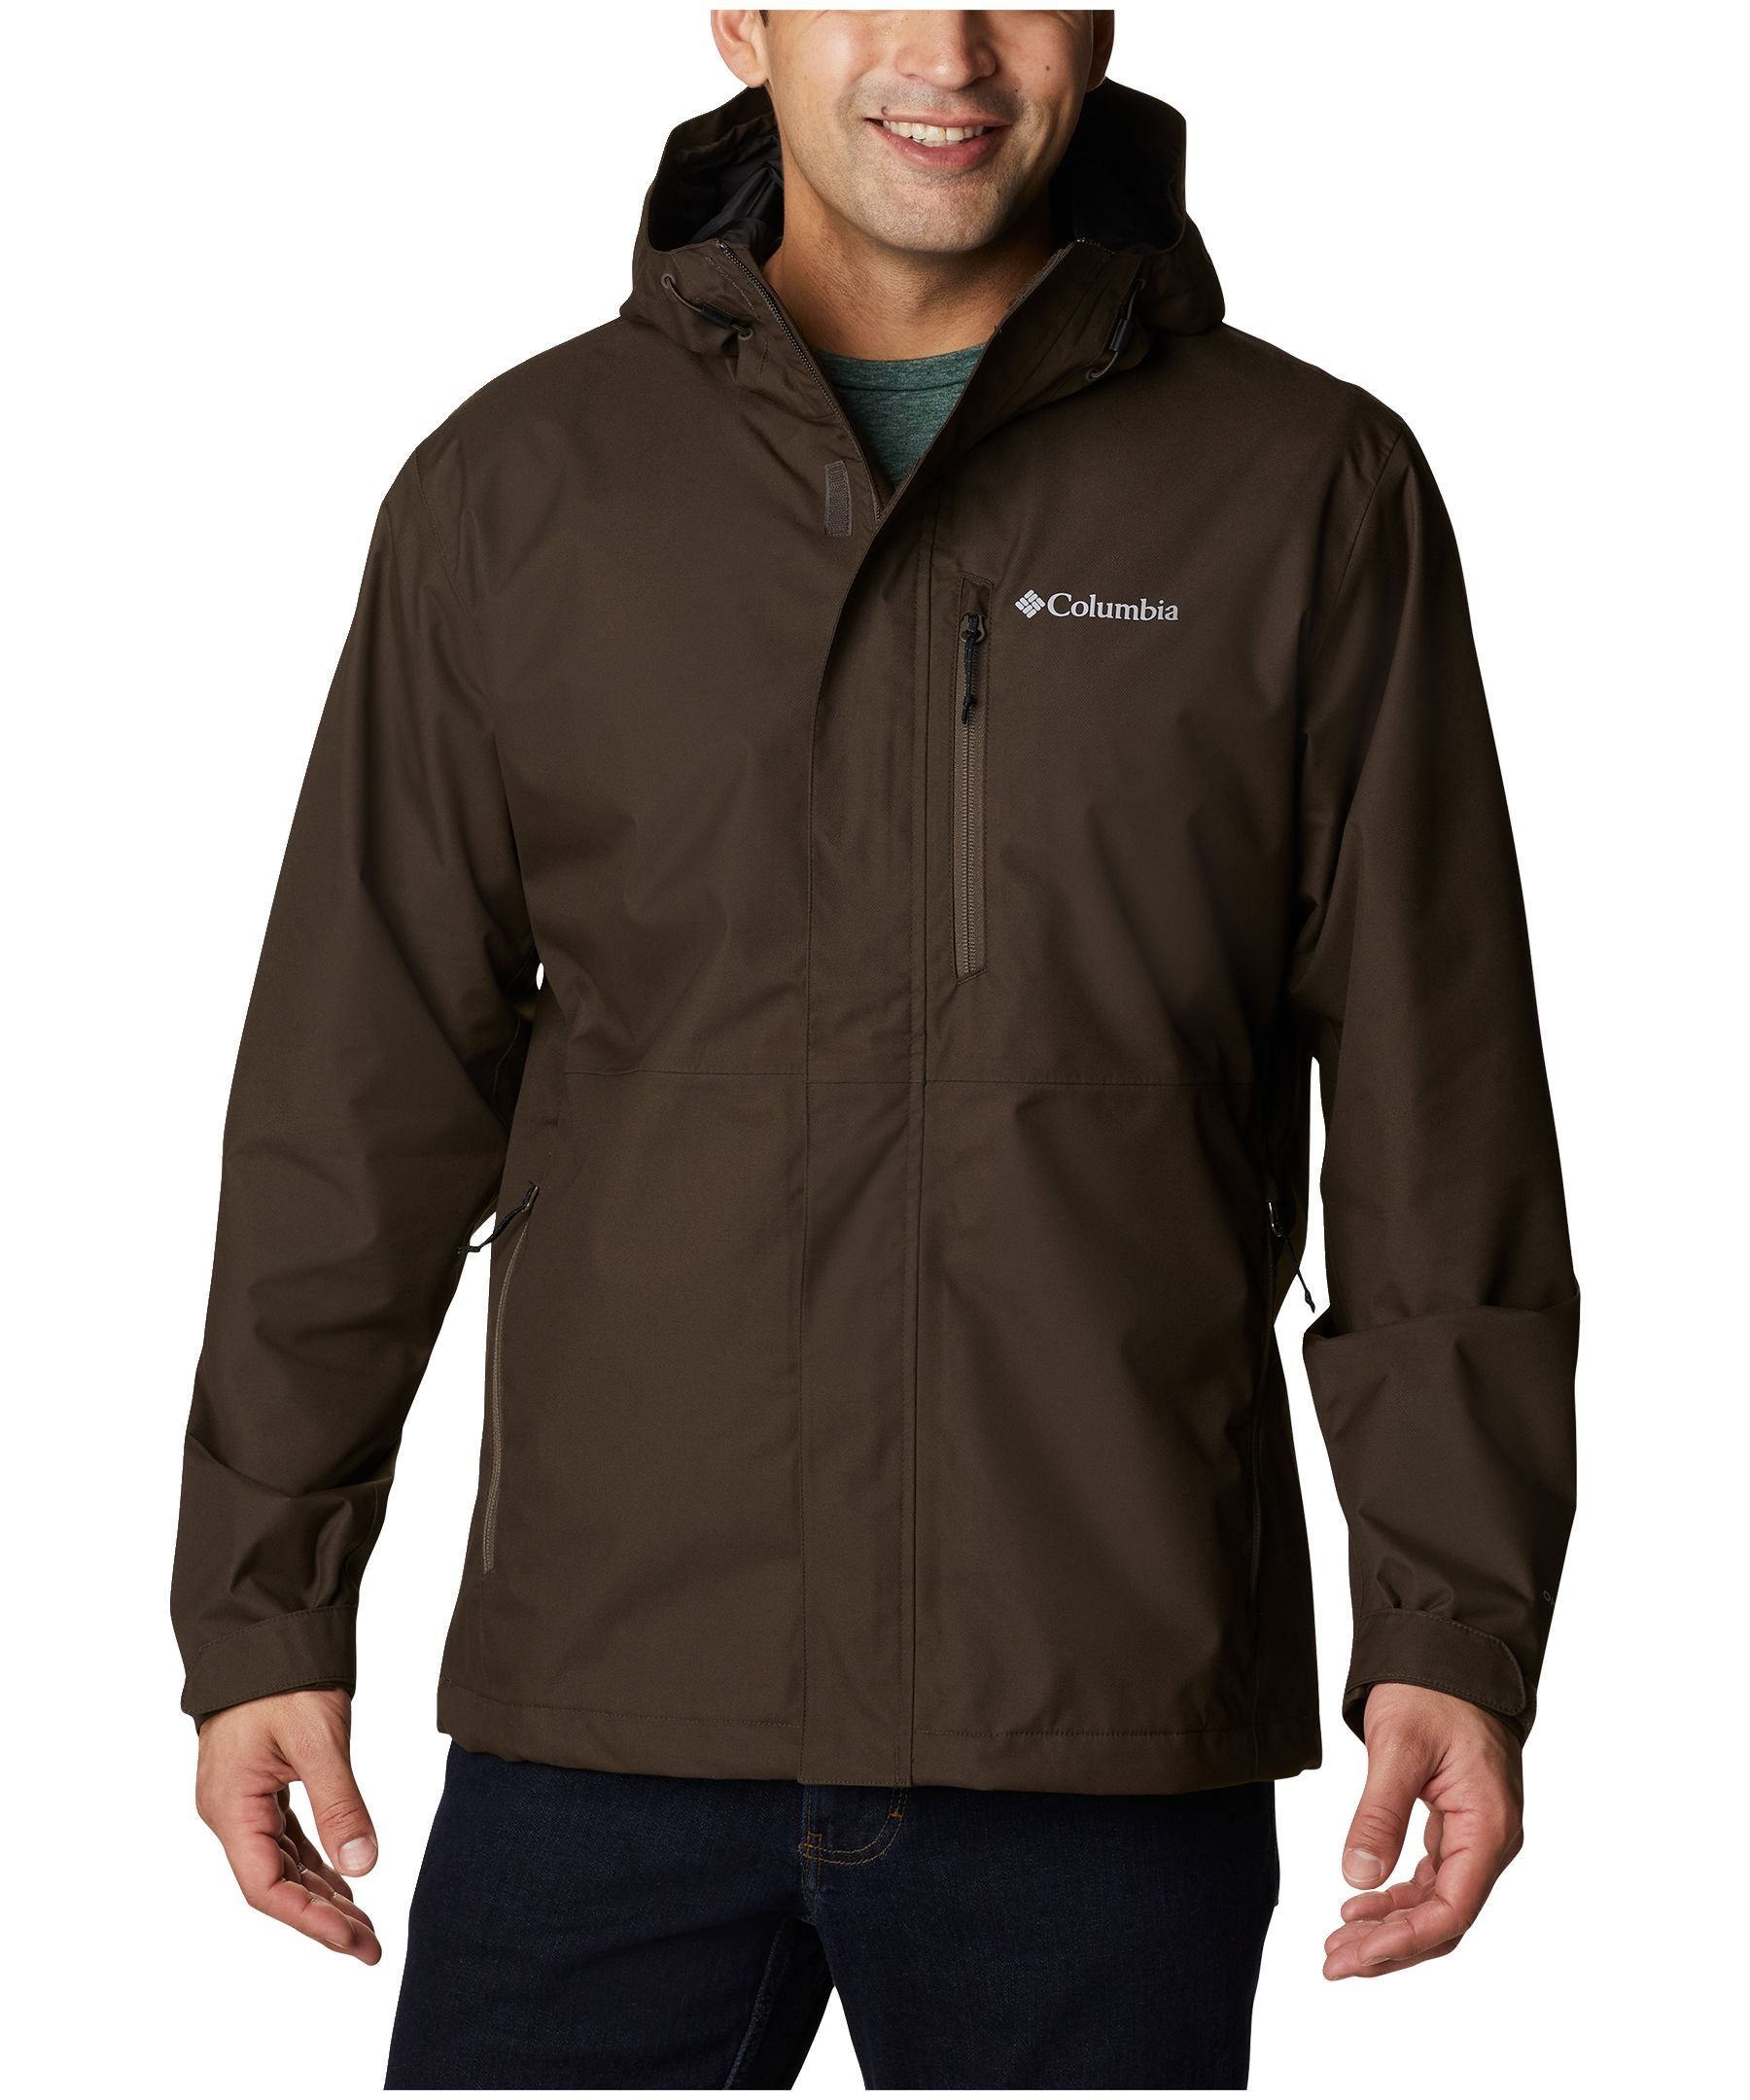 Columbia Men's Hikebound Omni-Tech Waterproof Jacket